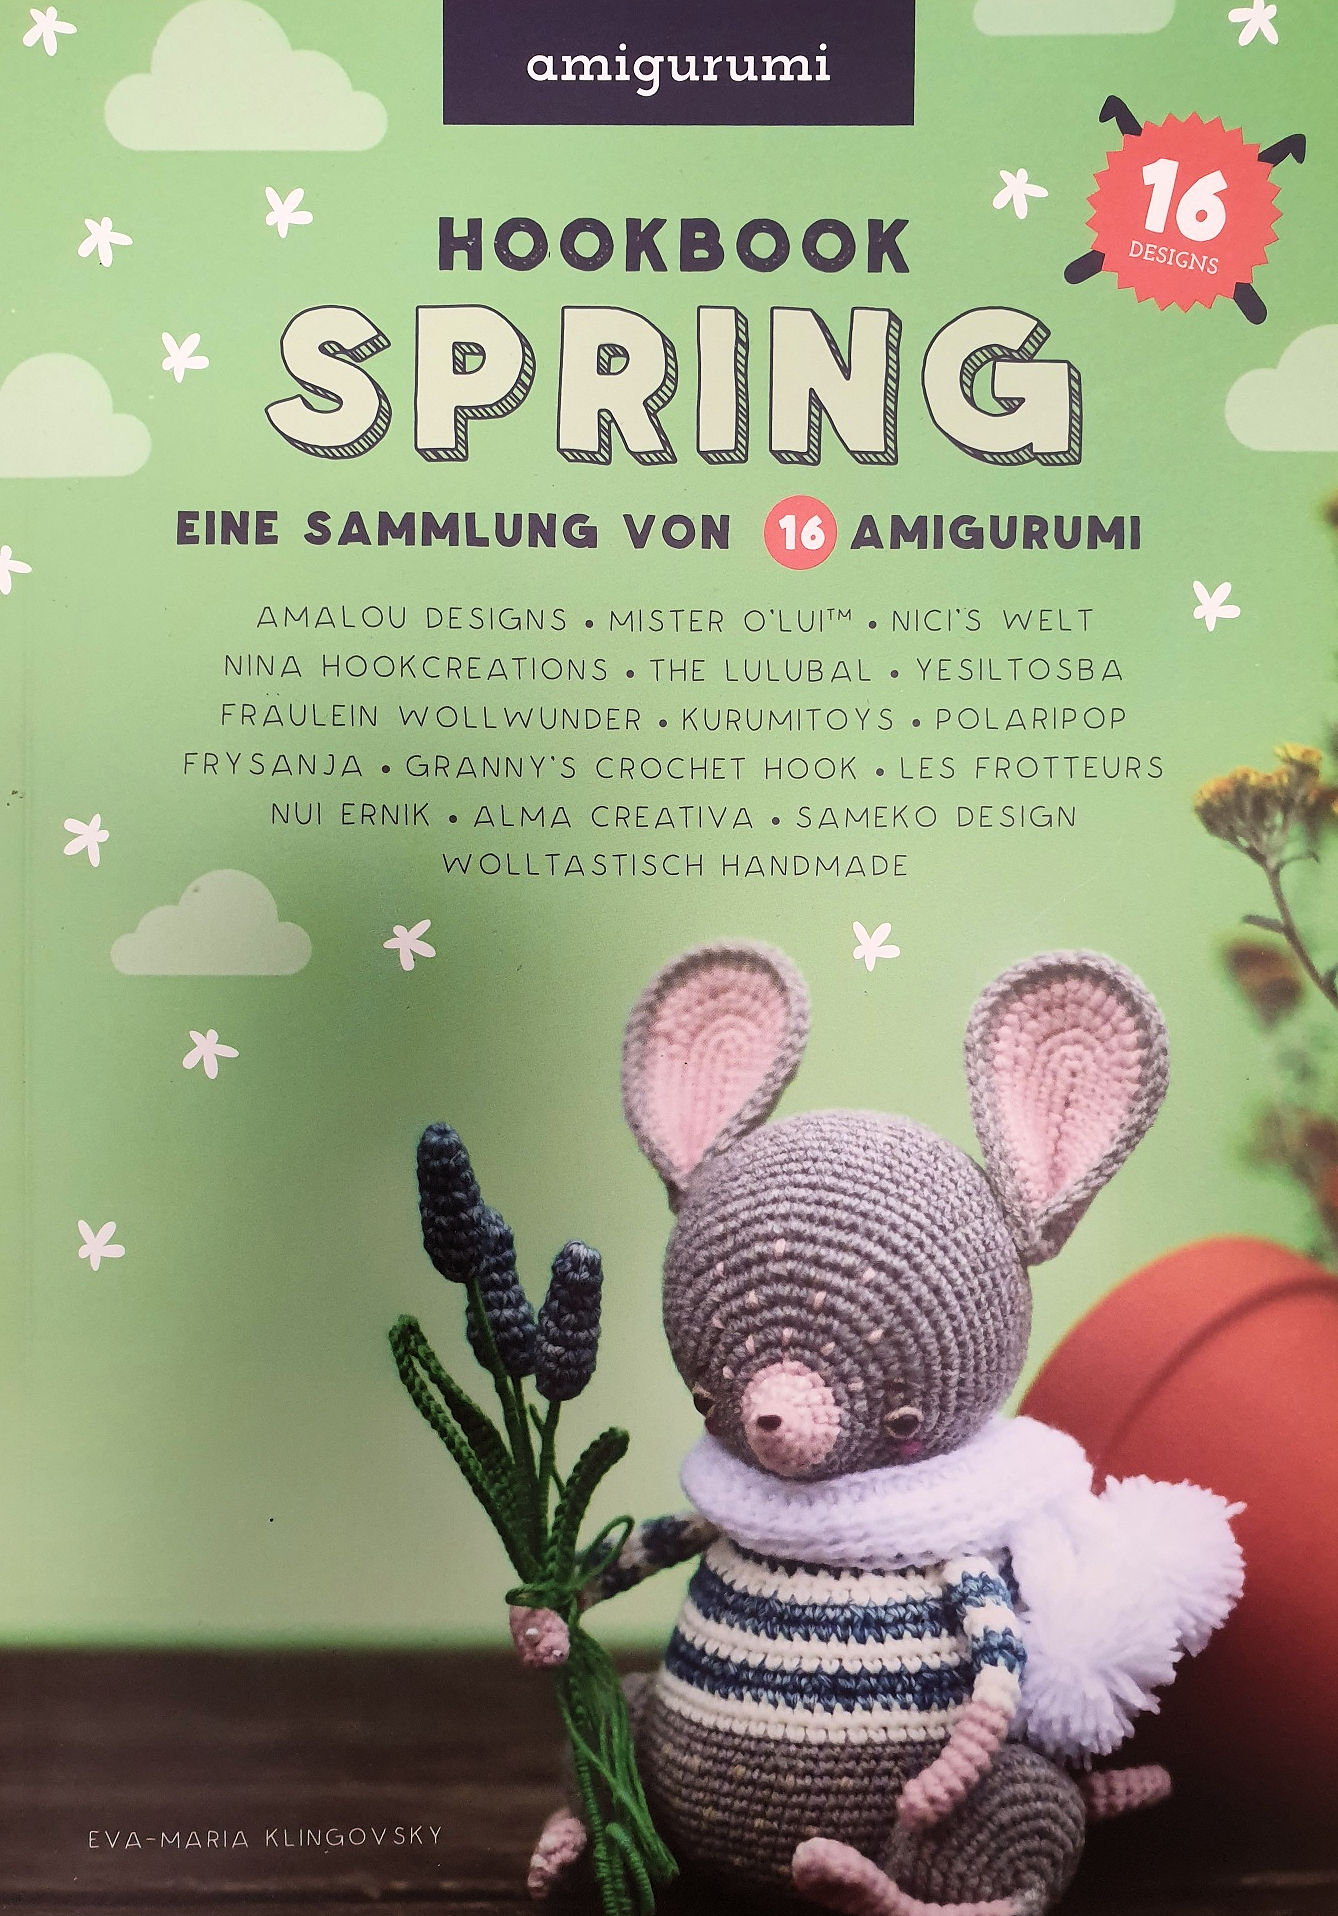 Amigurumi - Hookbook Spring (Eine Sammlung von 16 Amigurumis)